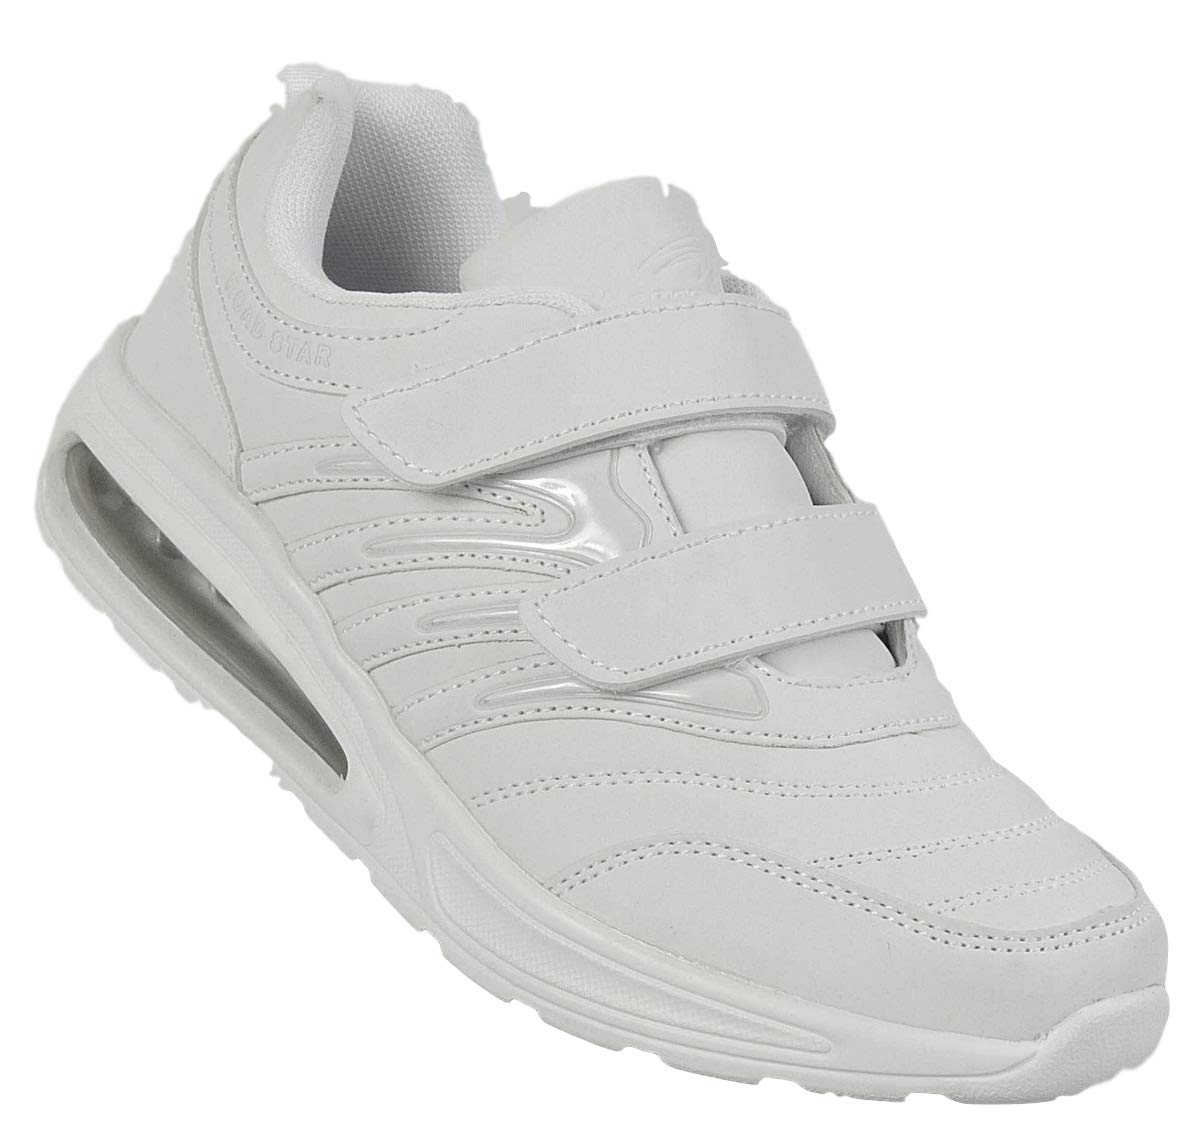 Bootsland Unisex Klett Sportschuhe Sneaker Turnschuhe Freizeitschuhe 001, Schuhgröße:43, Farbe:Weiß